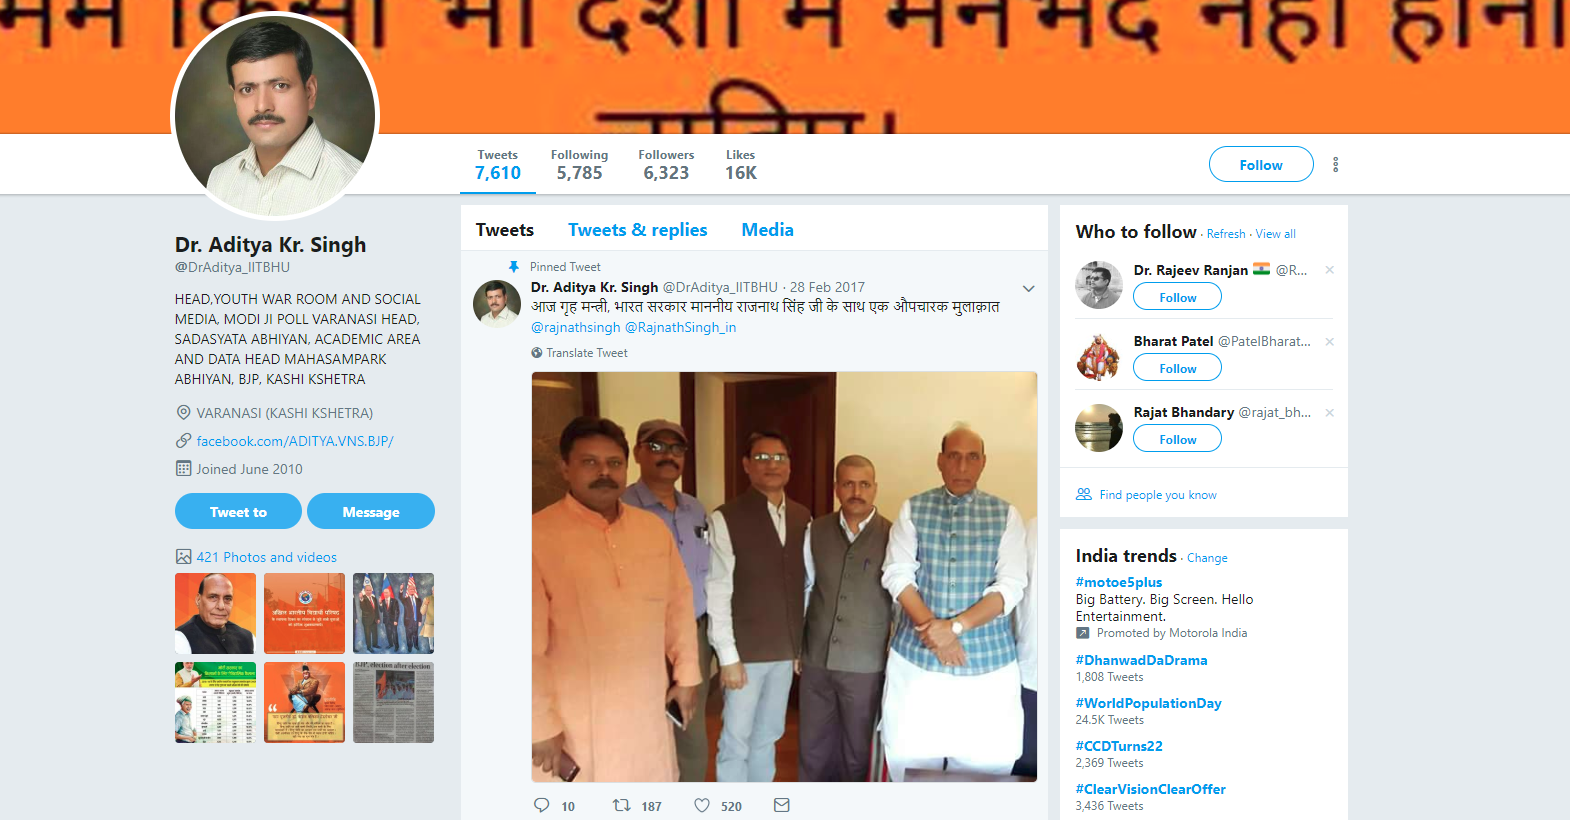 डॉ. आदित्य कुमार सिंह का ट्विटर प्रोफाइल, जिसकी पहली तस्वीर में वह गृहमंत्री राजनाथ सिंह के साथ हैं.